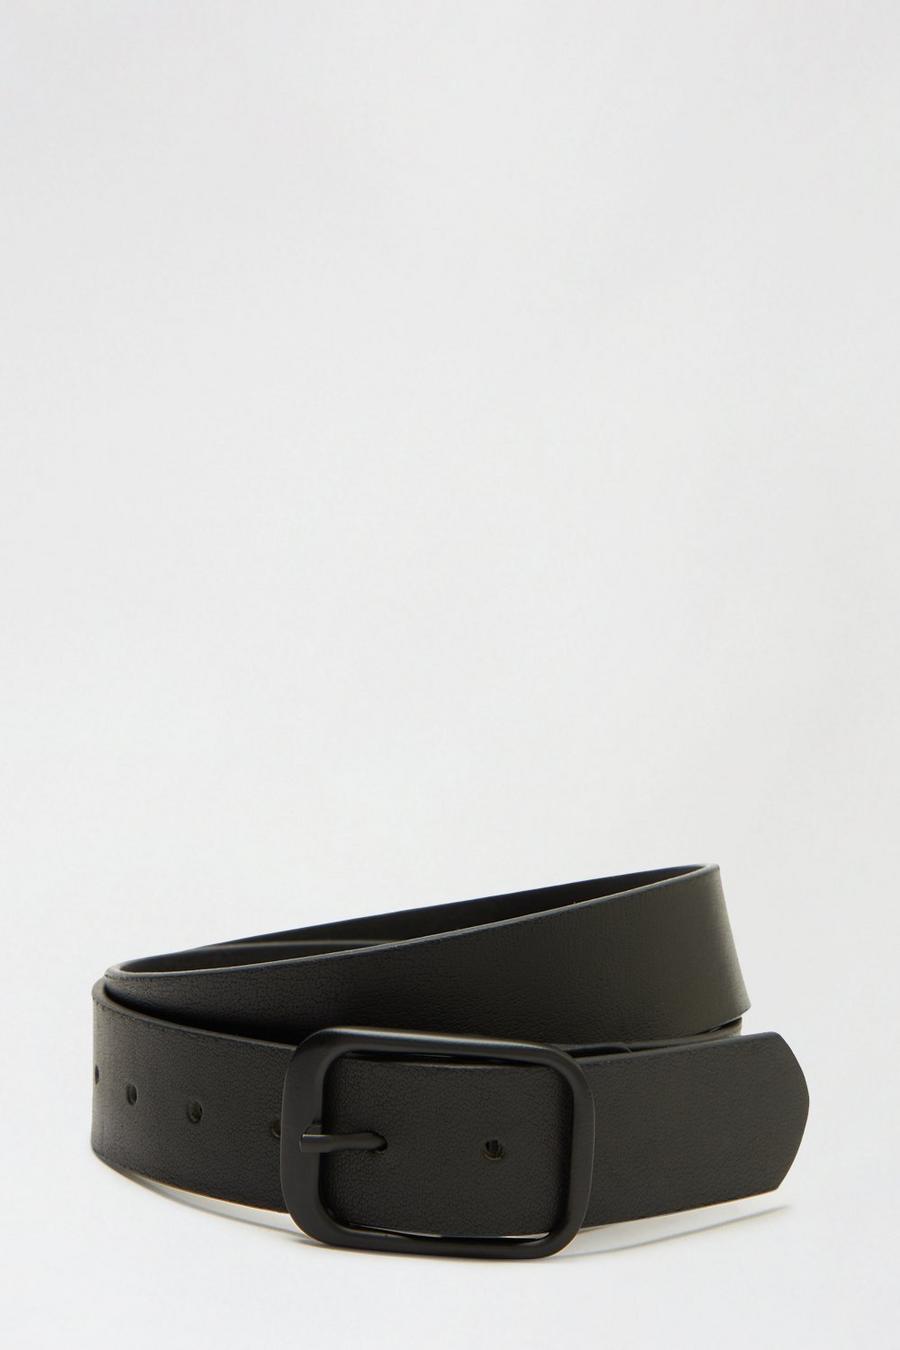 Leather Black Loop Buckle Belt